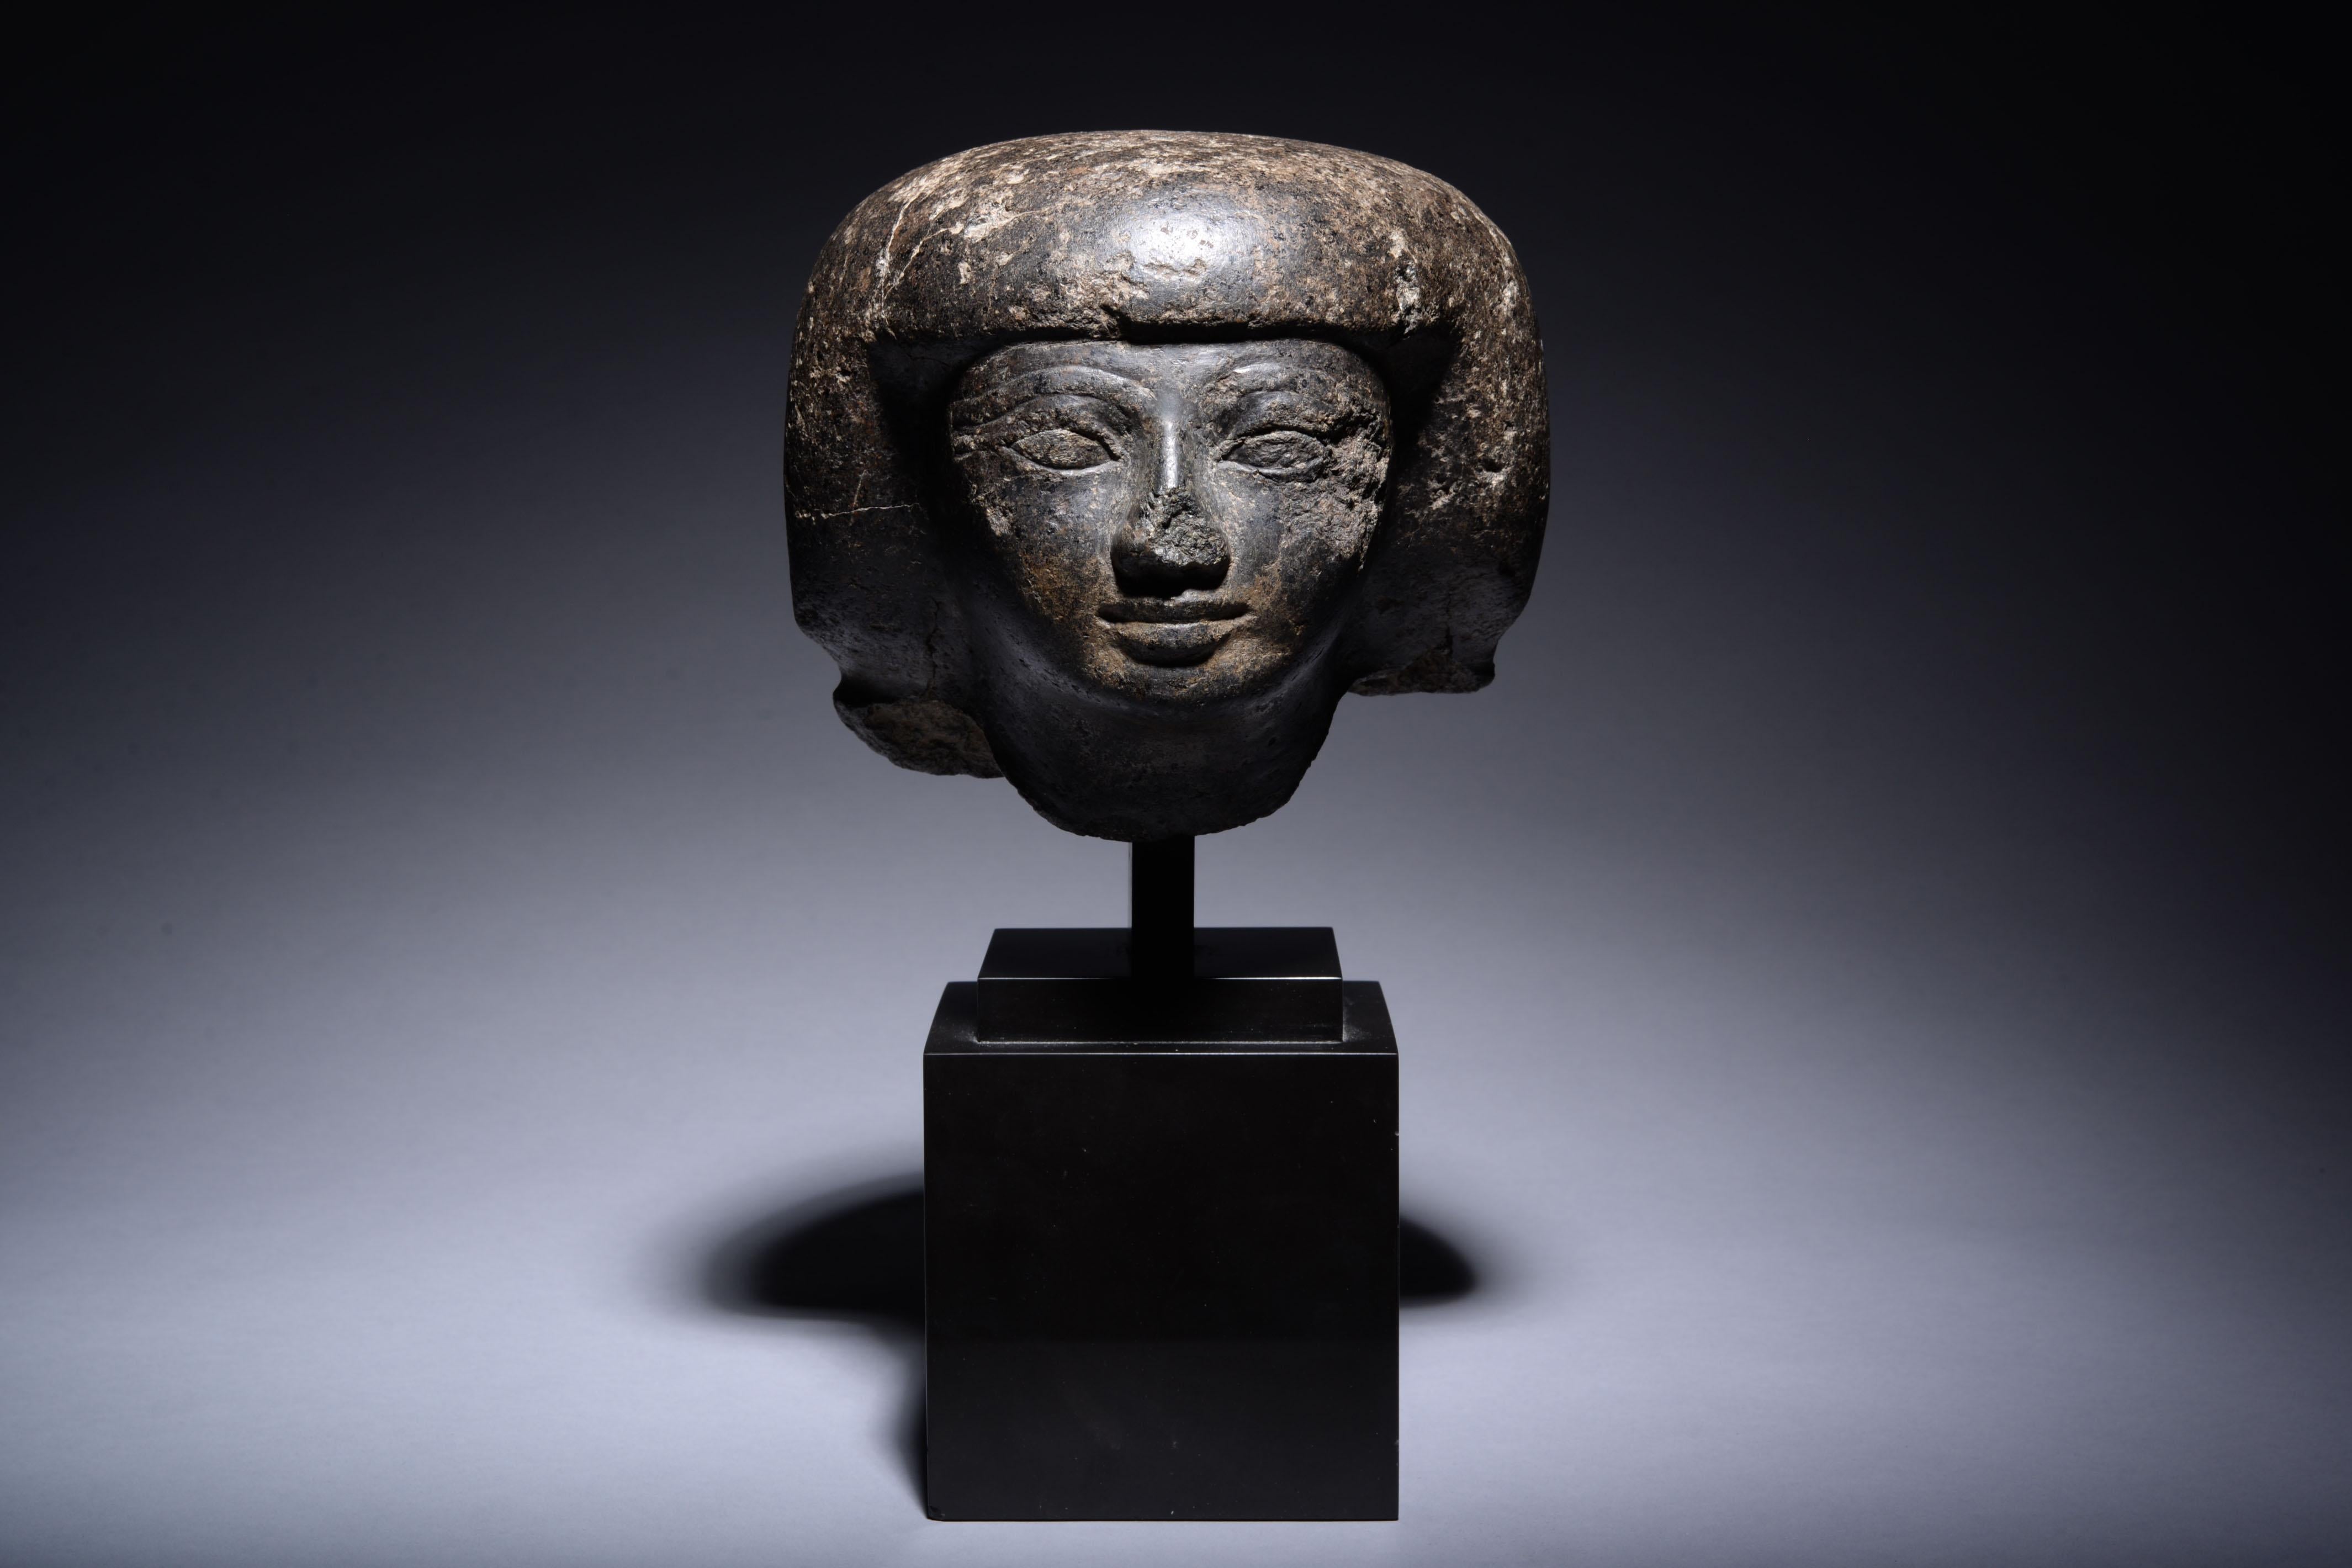 Tête d'homme égyptienne, granit sculpté. XVIIIe dynastie, vers 1550-1292 A.I.C.

Sculptée dans un magnifique granit foncé, cette tête représente une personne d'élite, peut-être un représentant du gouvernement. L'homme est représenté avec un visage